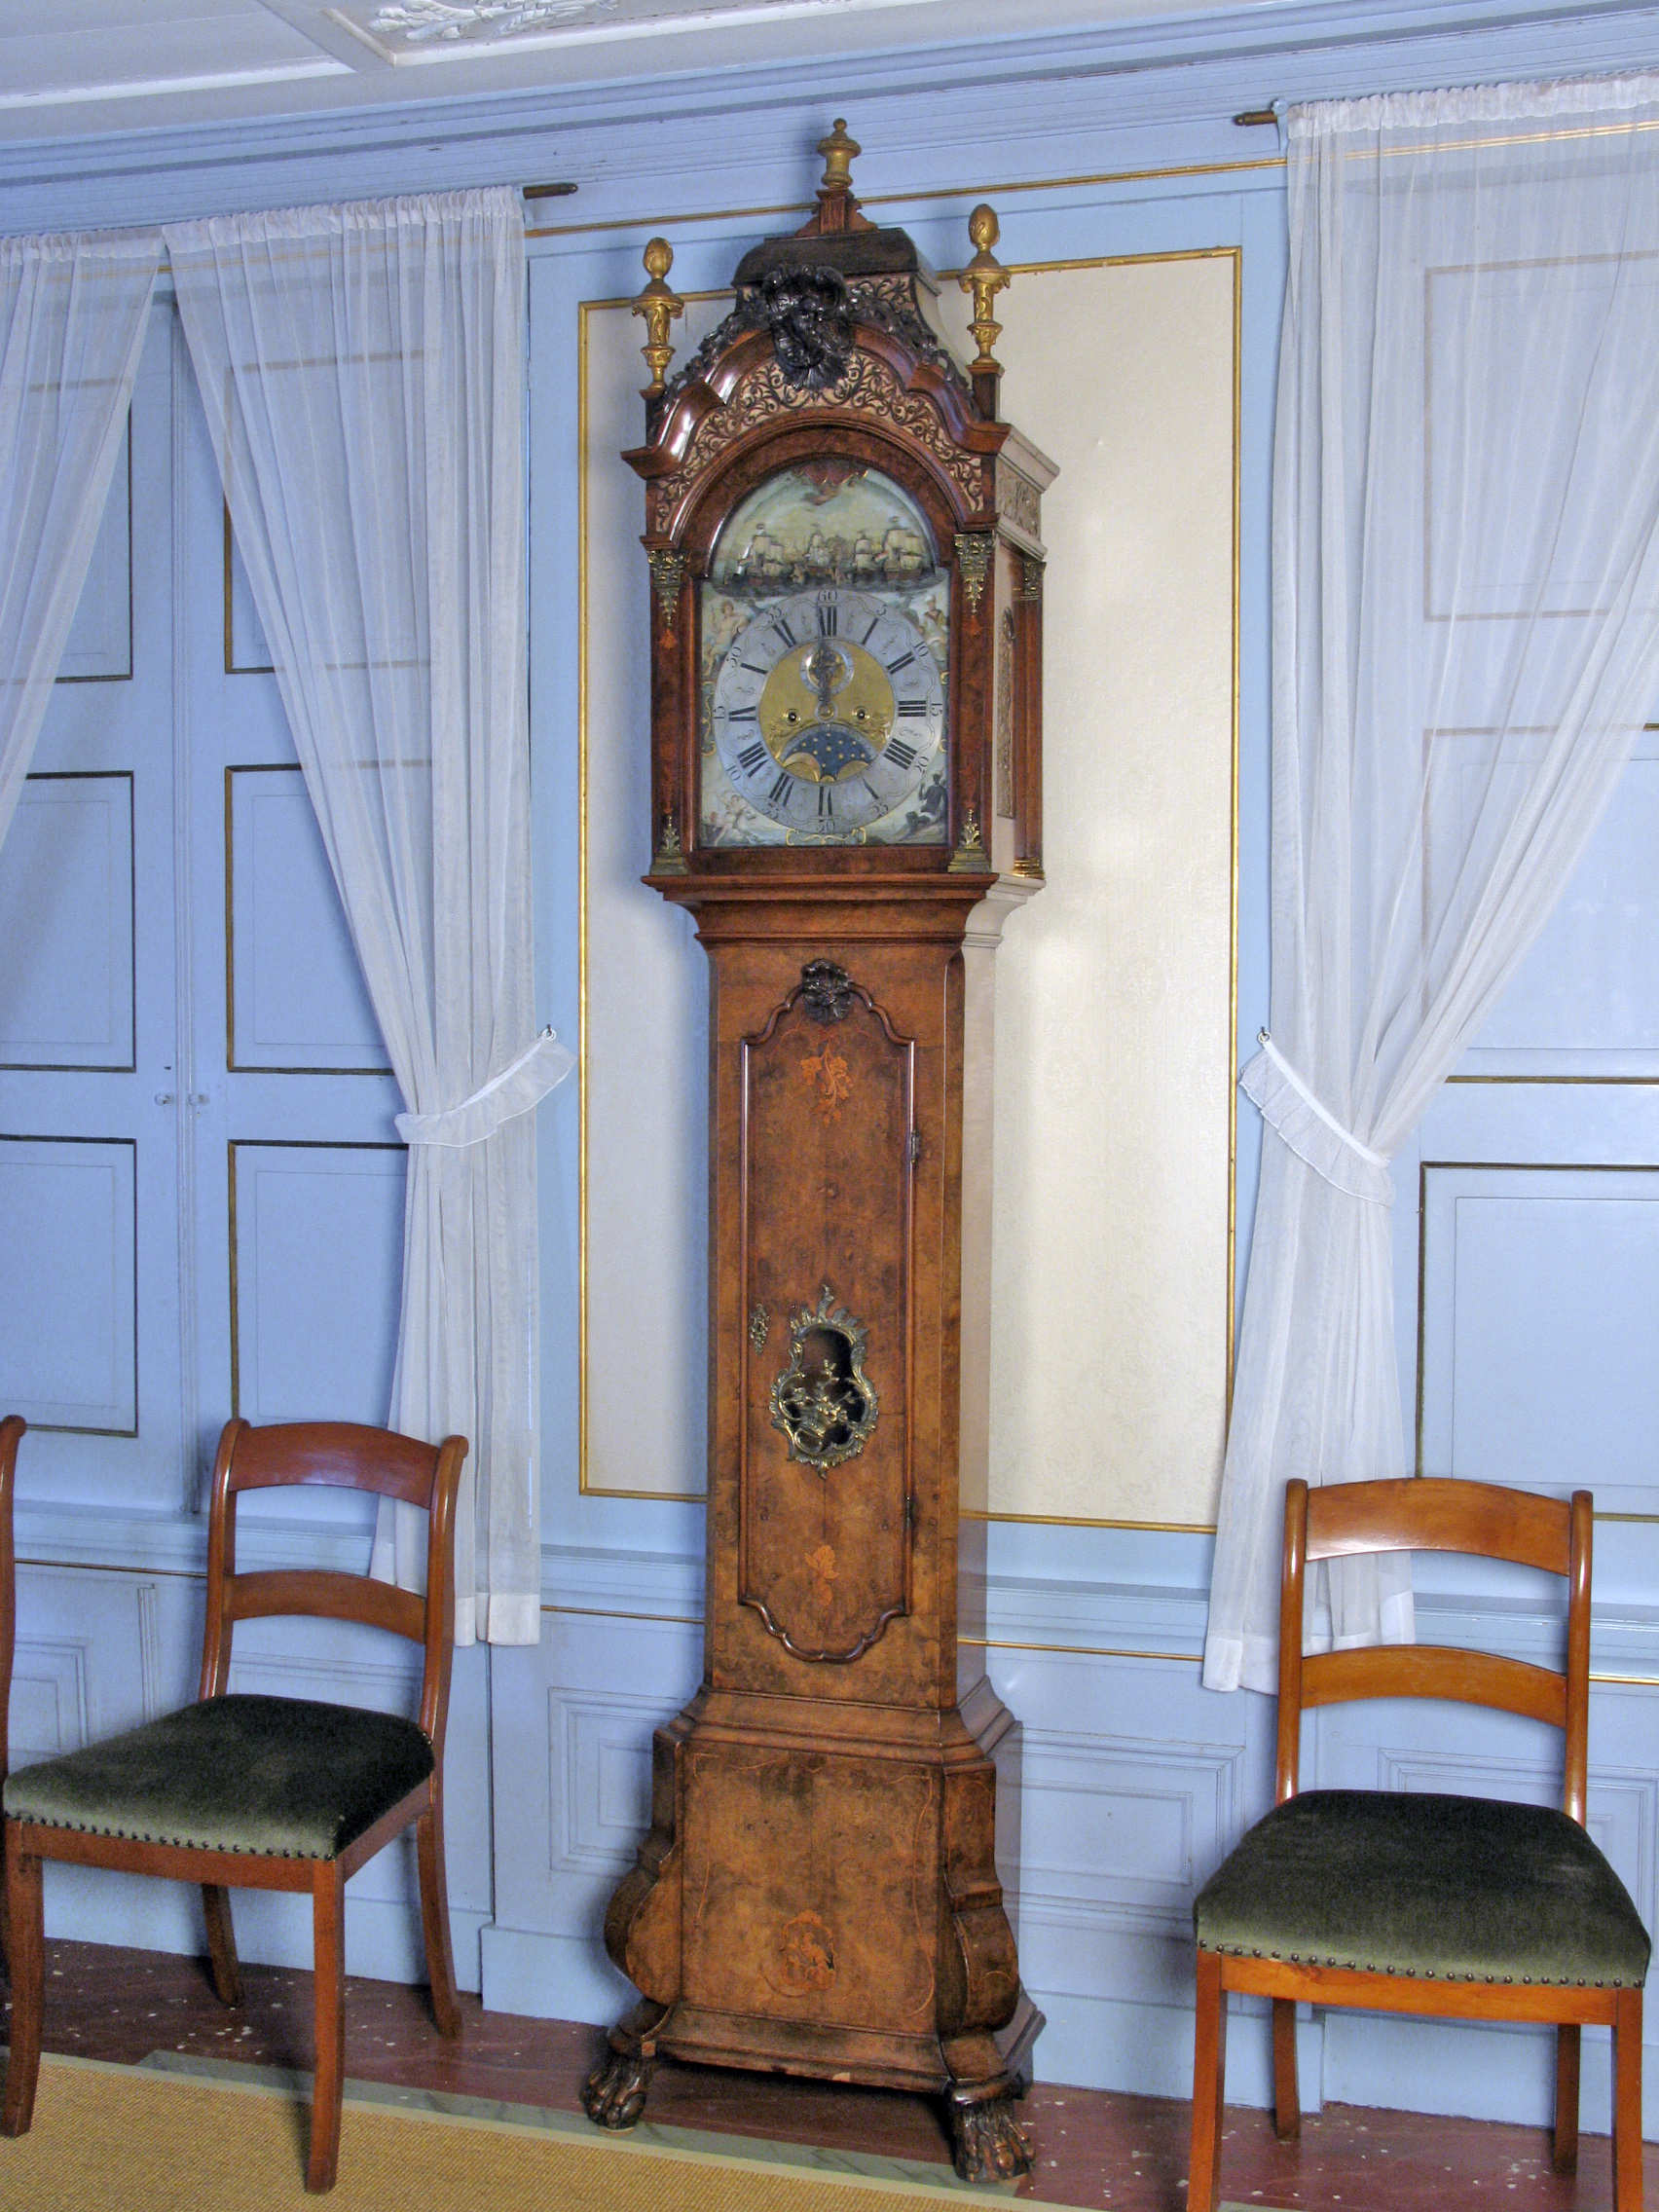 St kiezen puur Klokkast van staand horloge gerestaureerd - Honig Breethuis